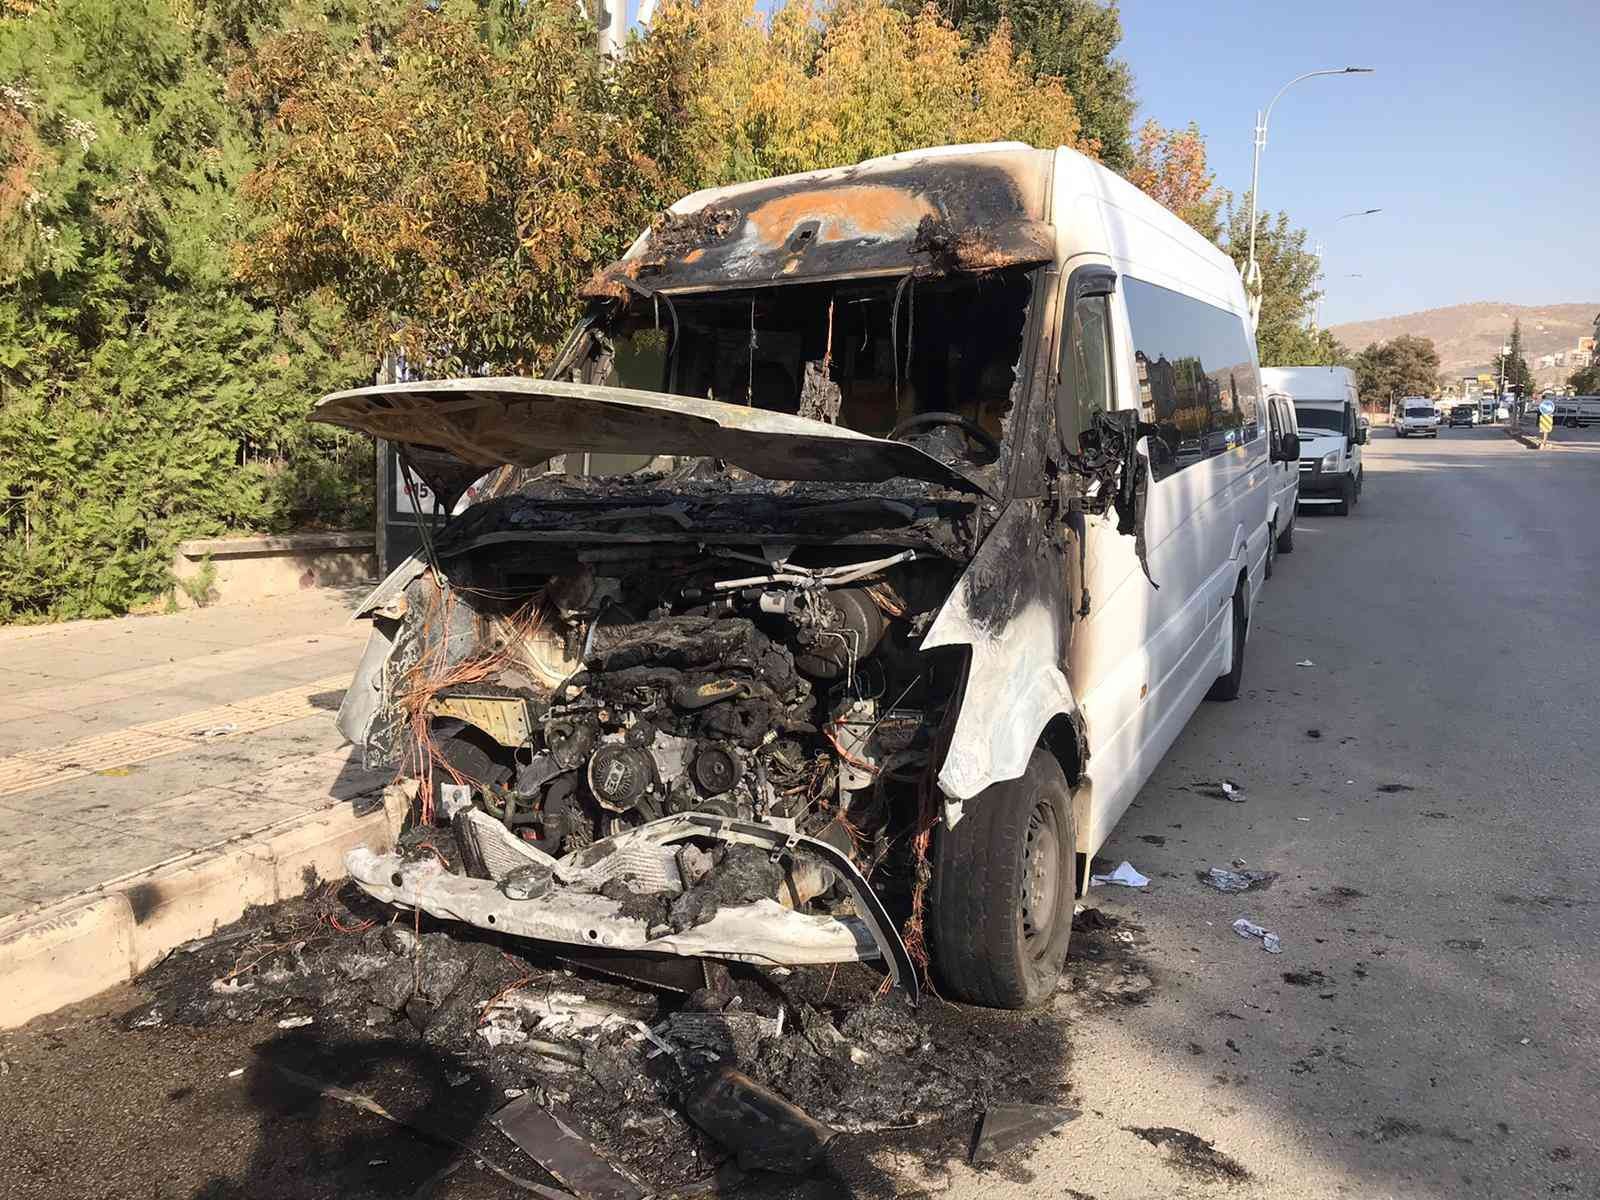 Elazığ’da 4 saatte 3 araç kundaklandı #elazig